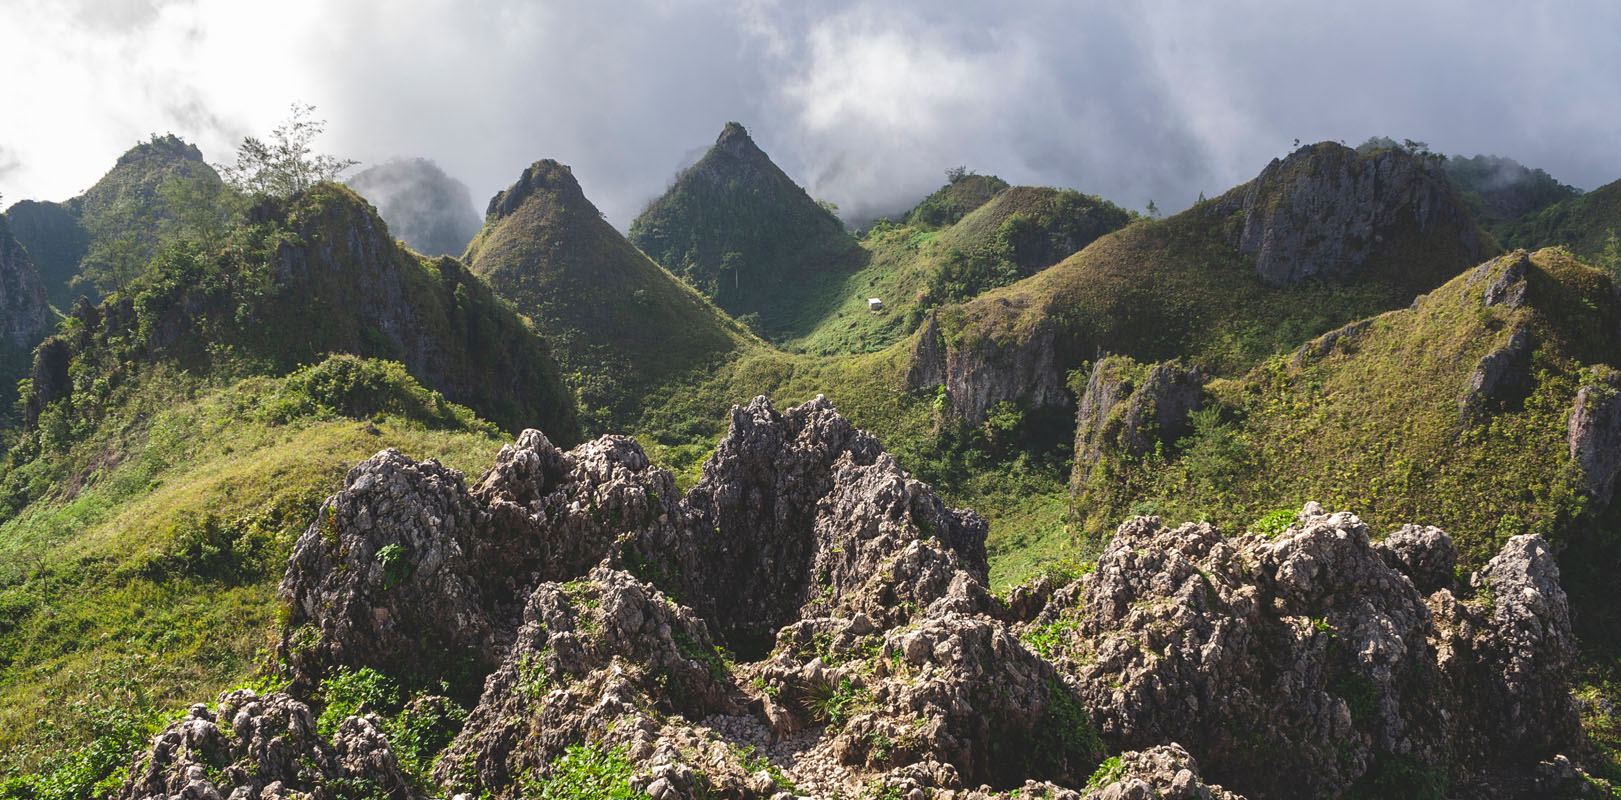 Best places to visit in Cebu - Osmena Peak